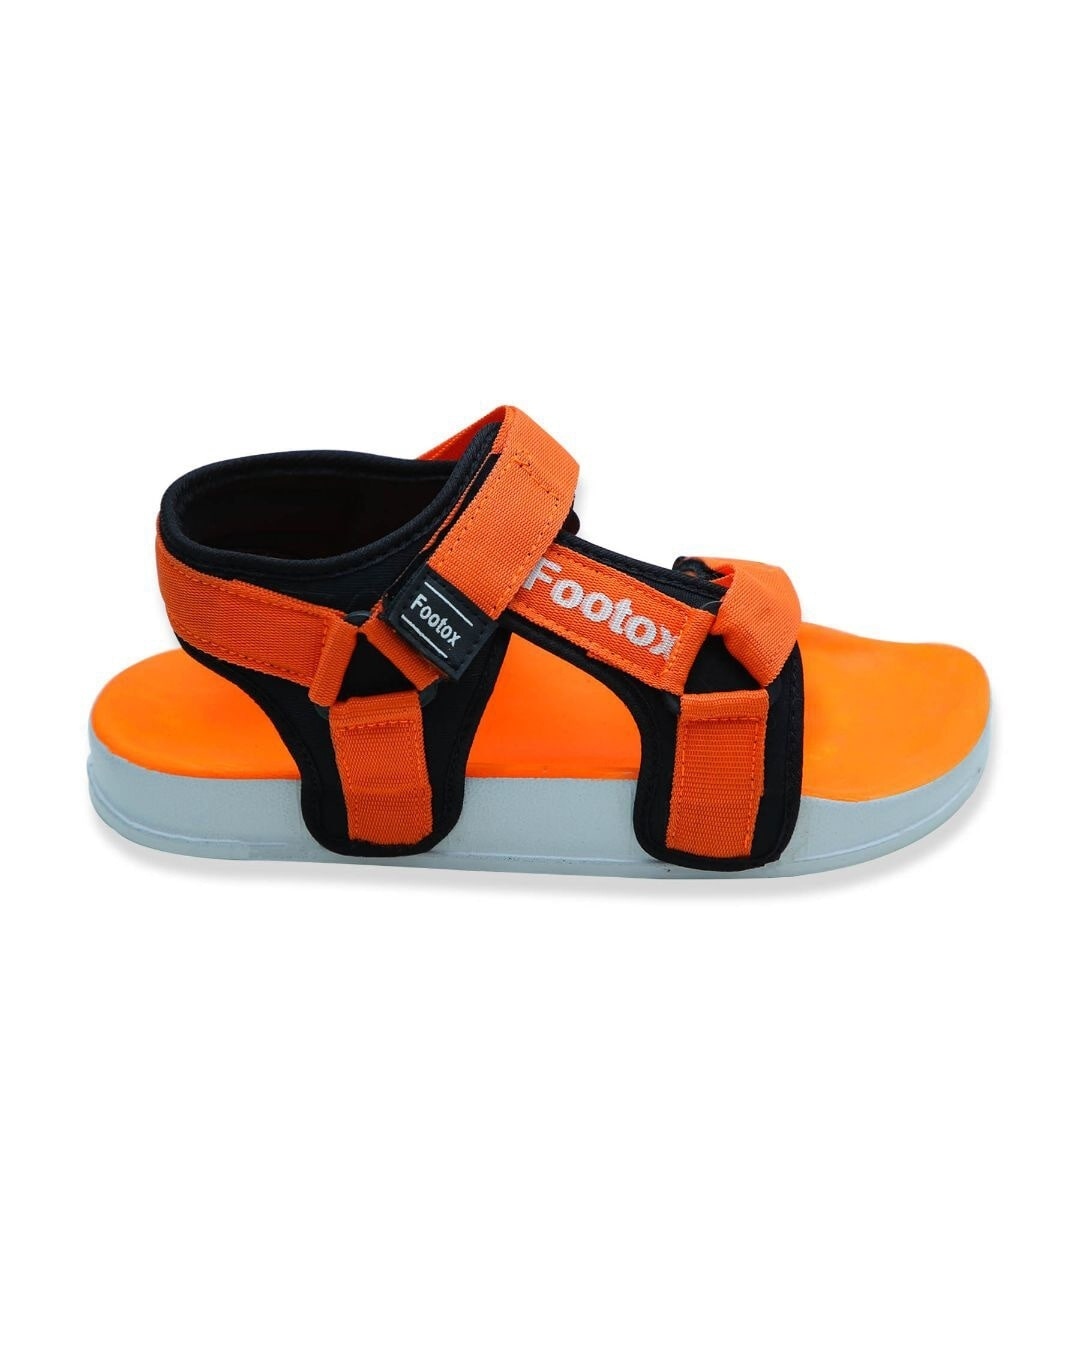 Shop Orange Comfort Sandals For Men